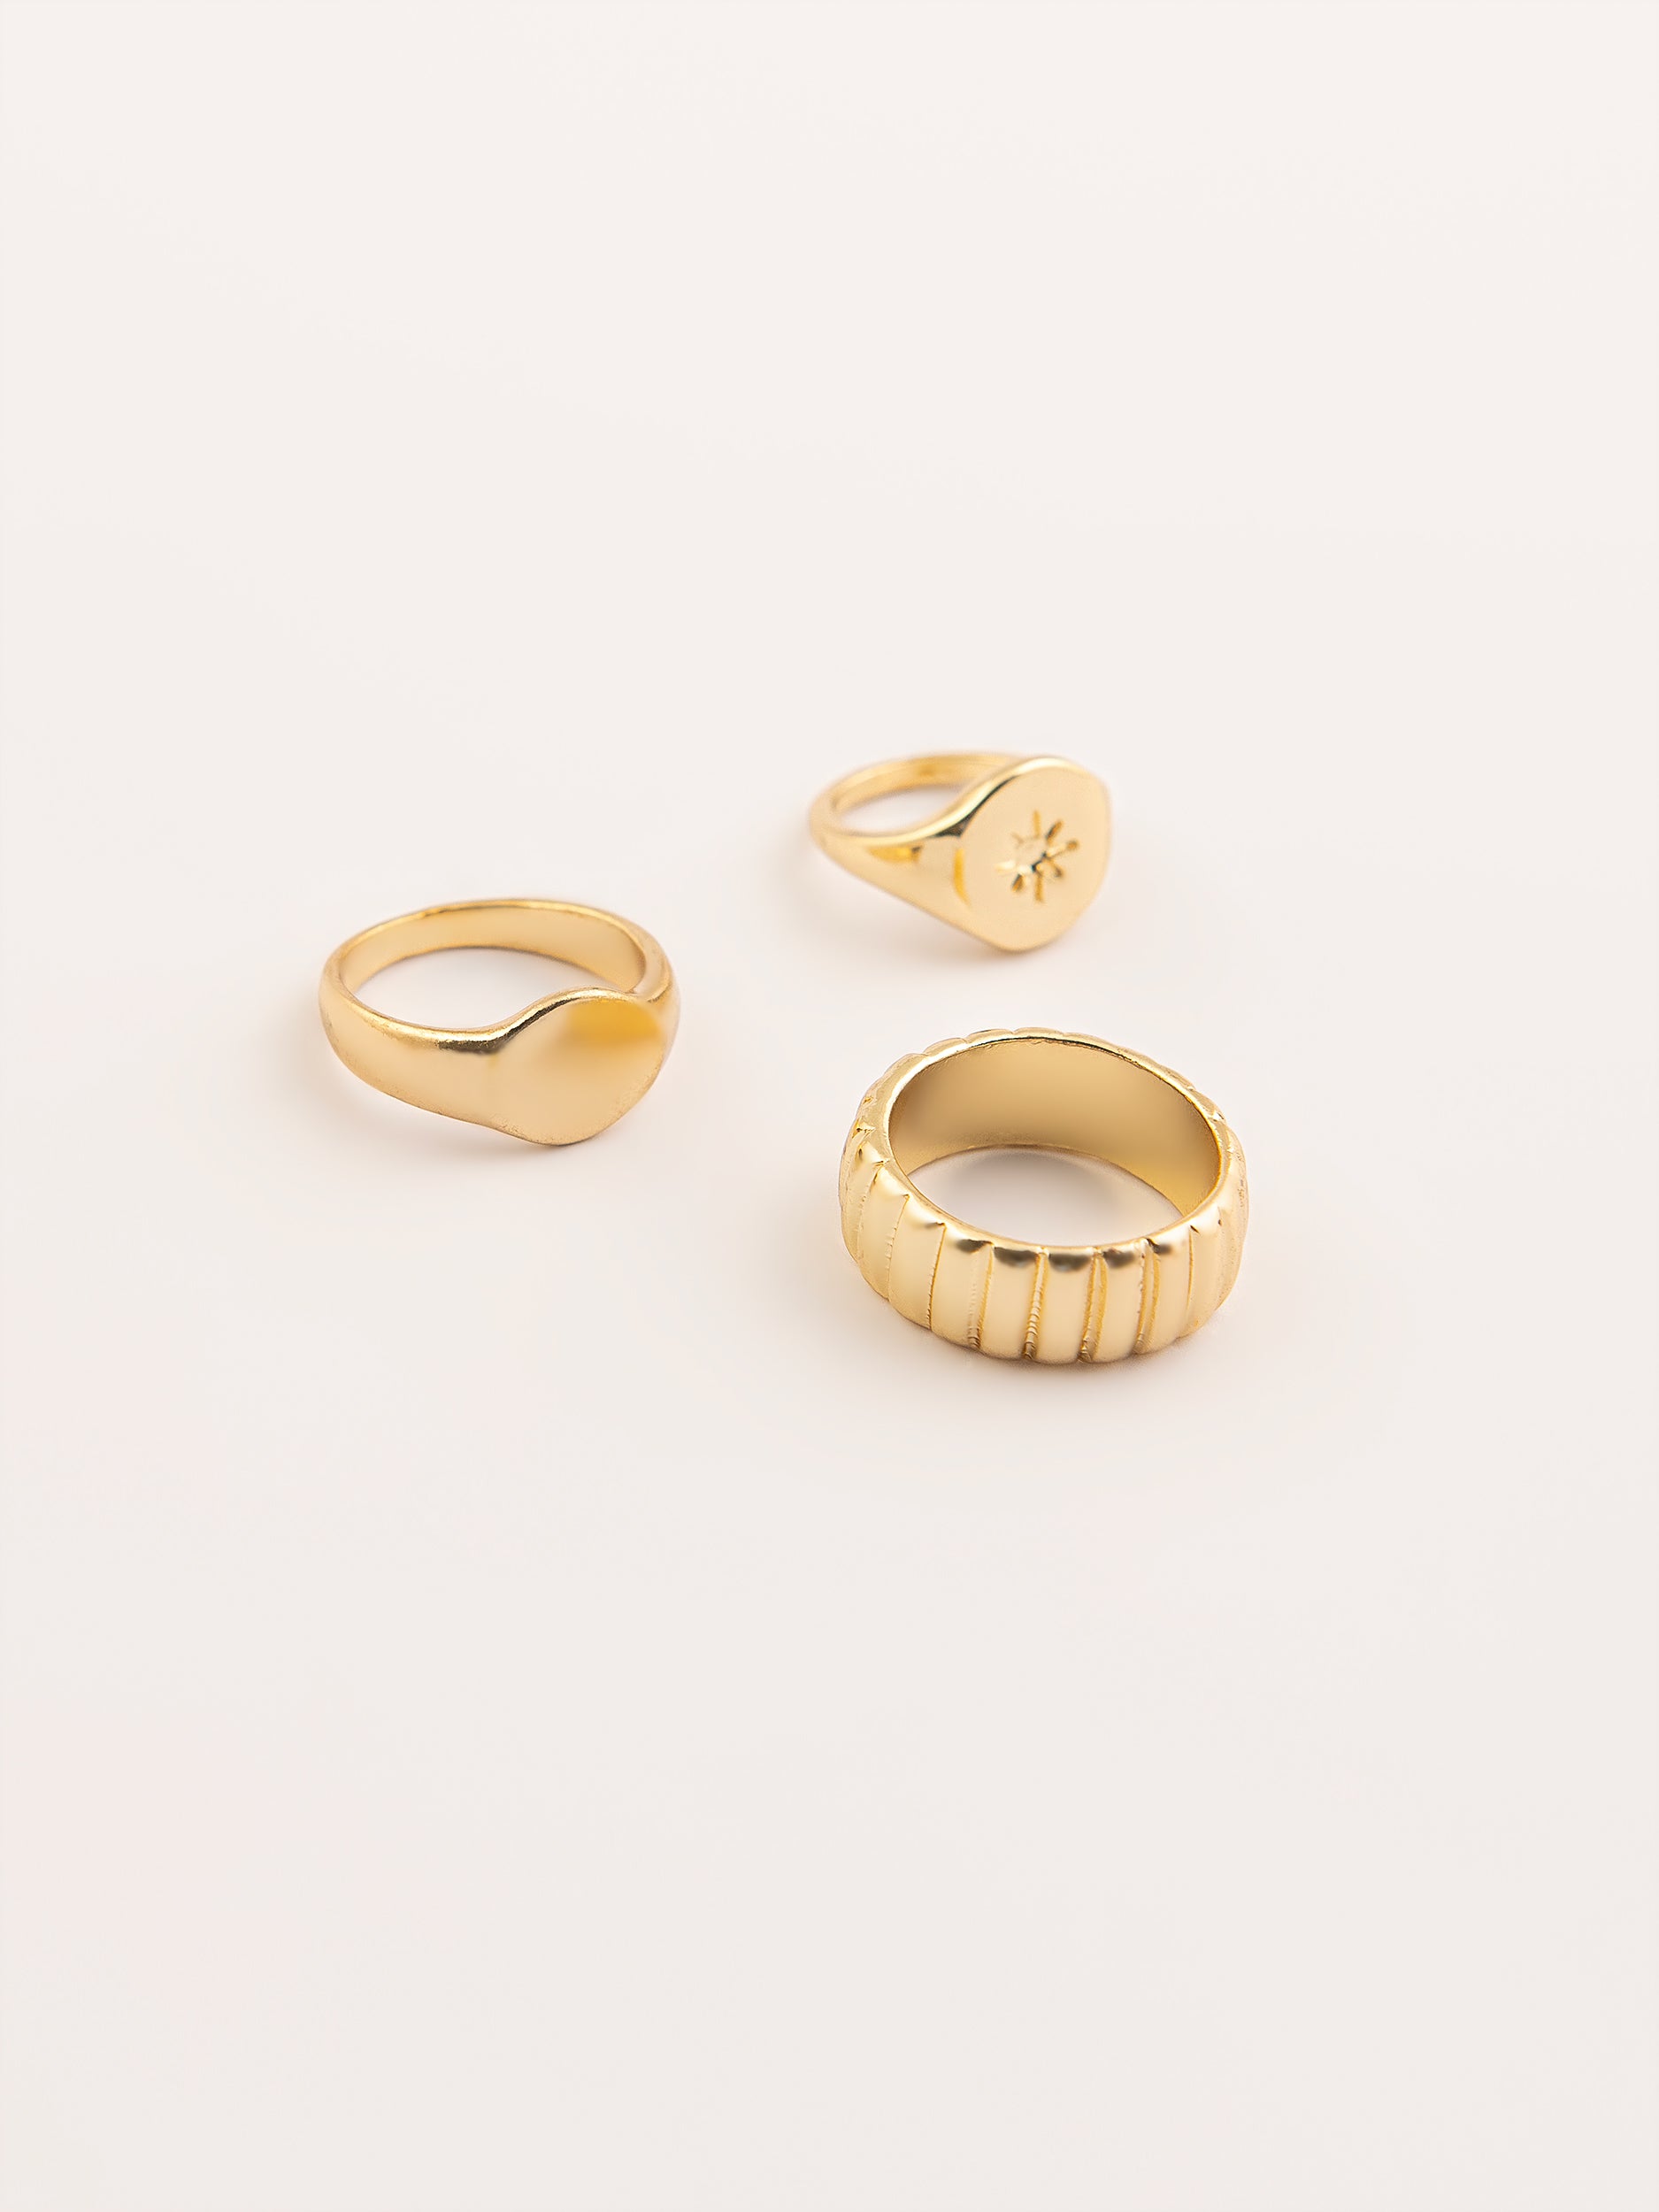 gold-ring-set